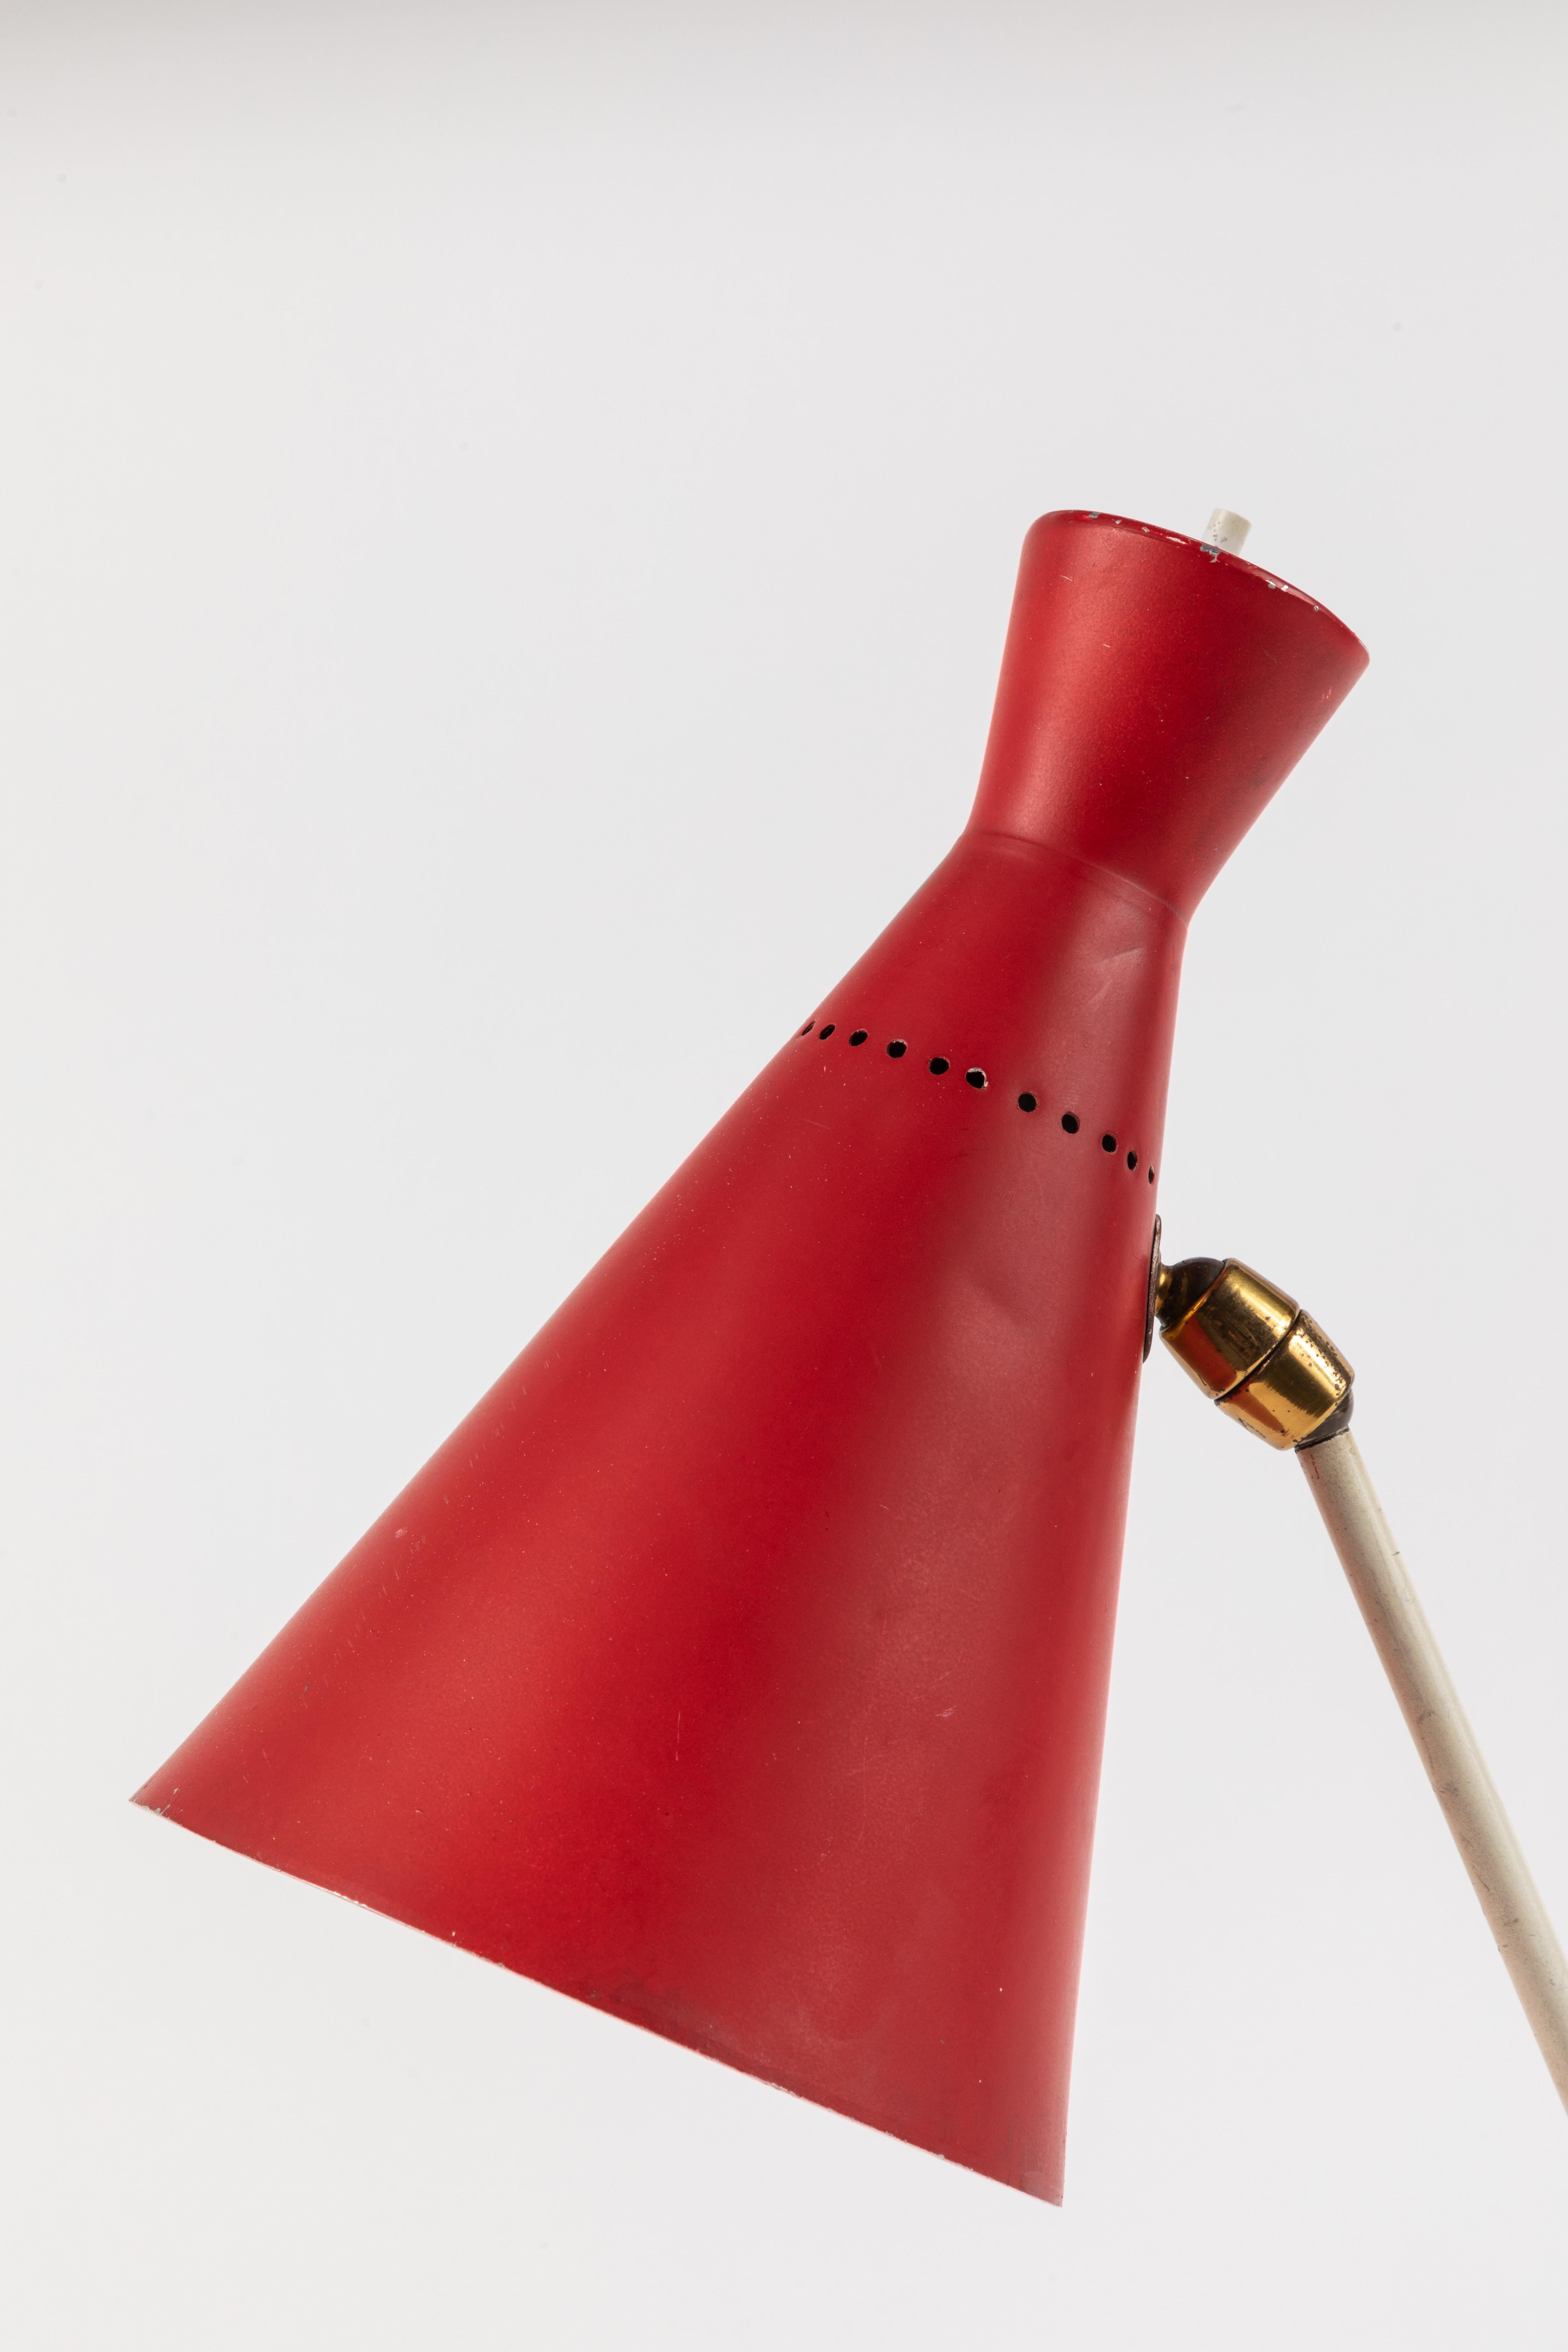 Rote und weiße Stilux Milano-Tischlampe, 1950er Jahre (Metall)